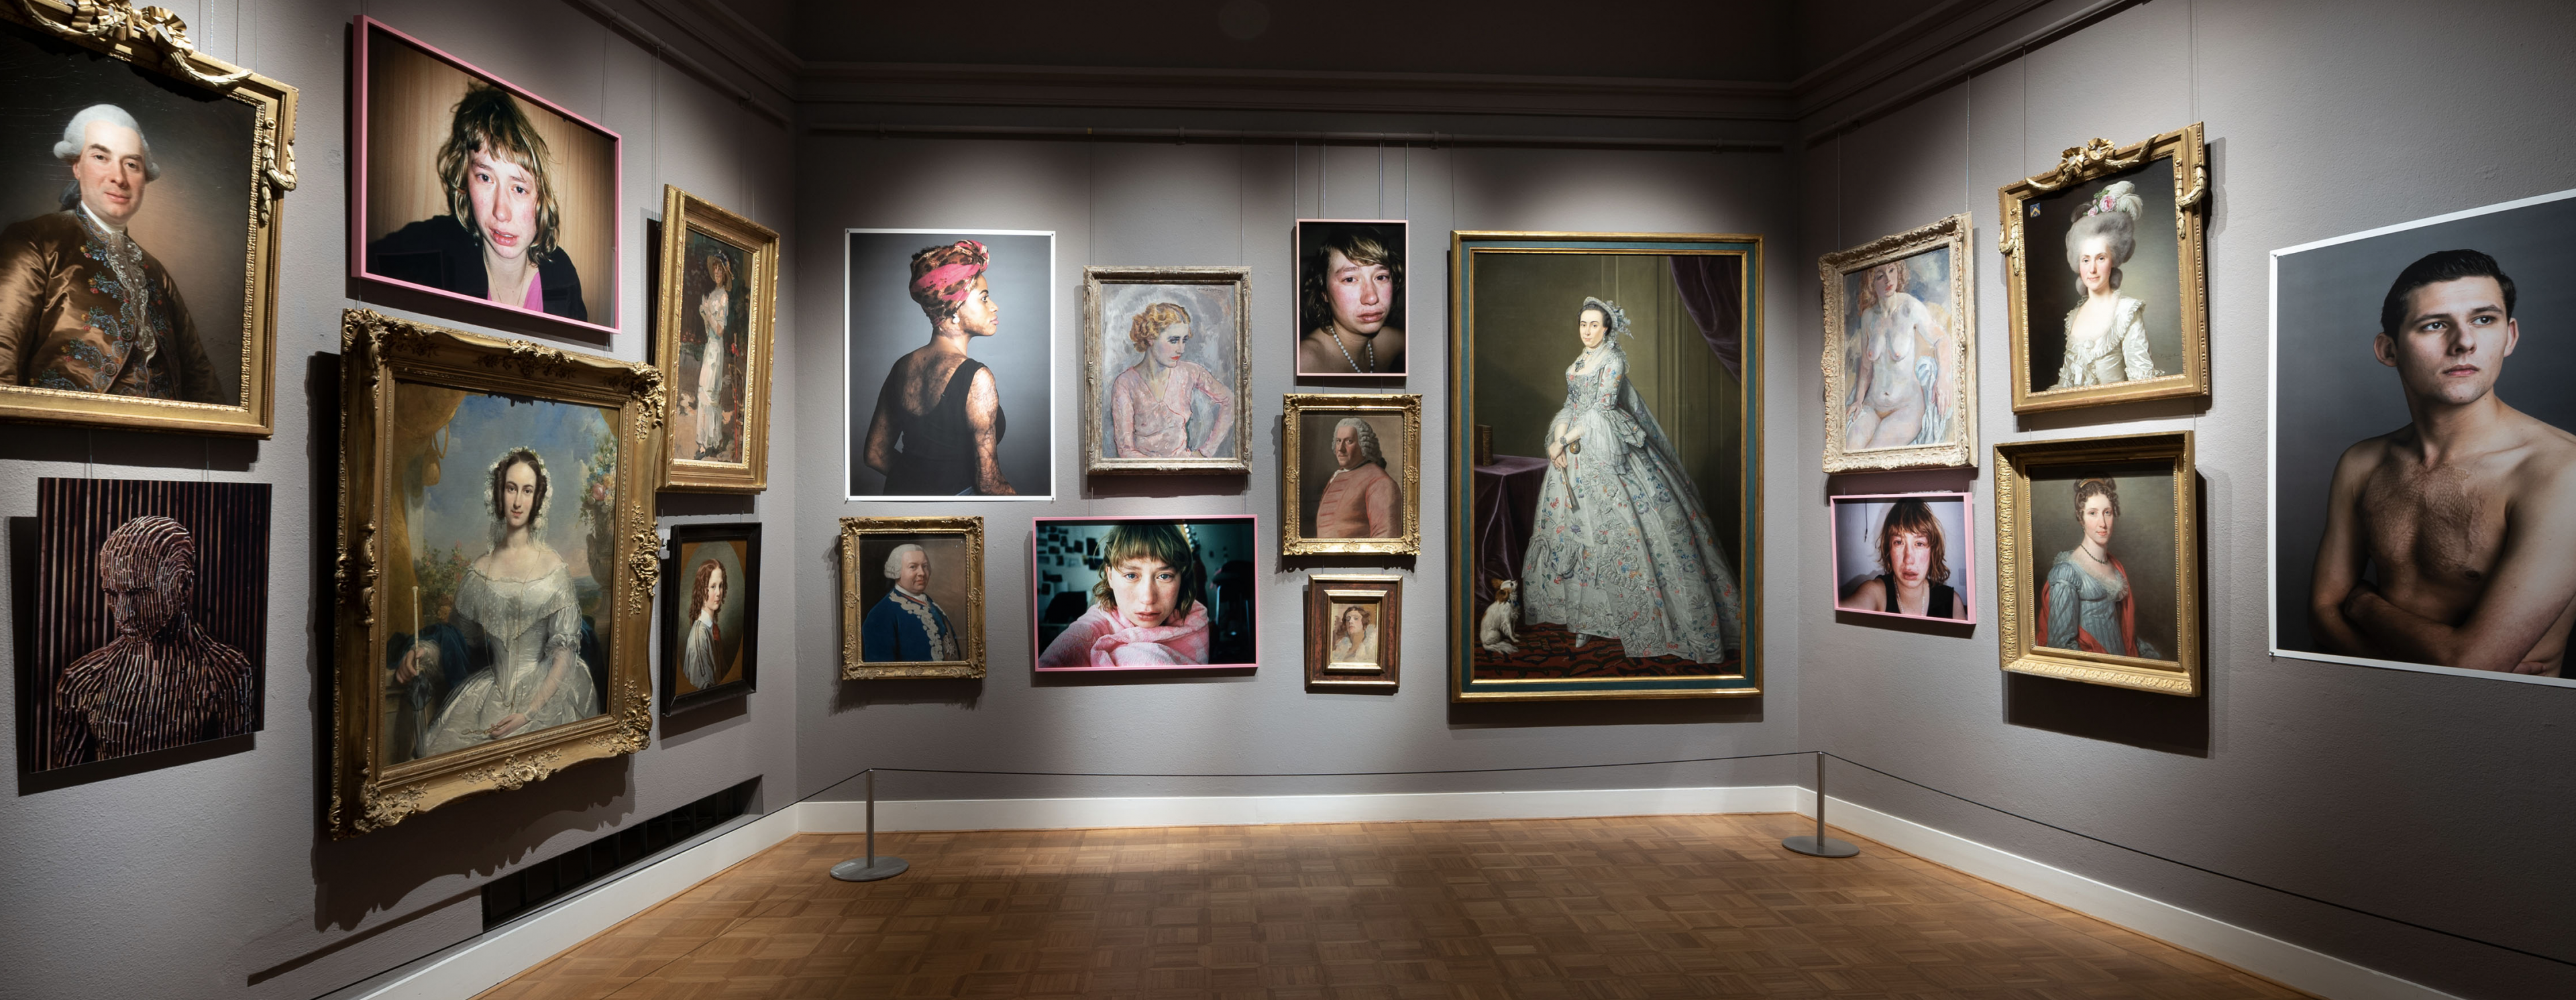 Un buen ejemplo de una colección de arte de 'retratos' contemporáneos y clásicos en el Rijksmuseum van Twente